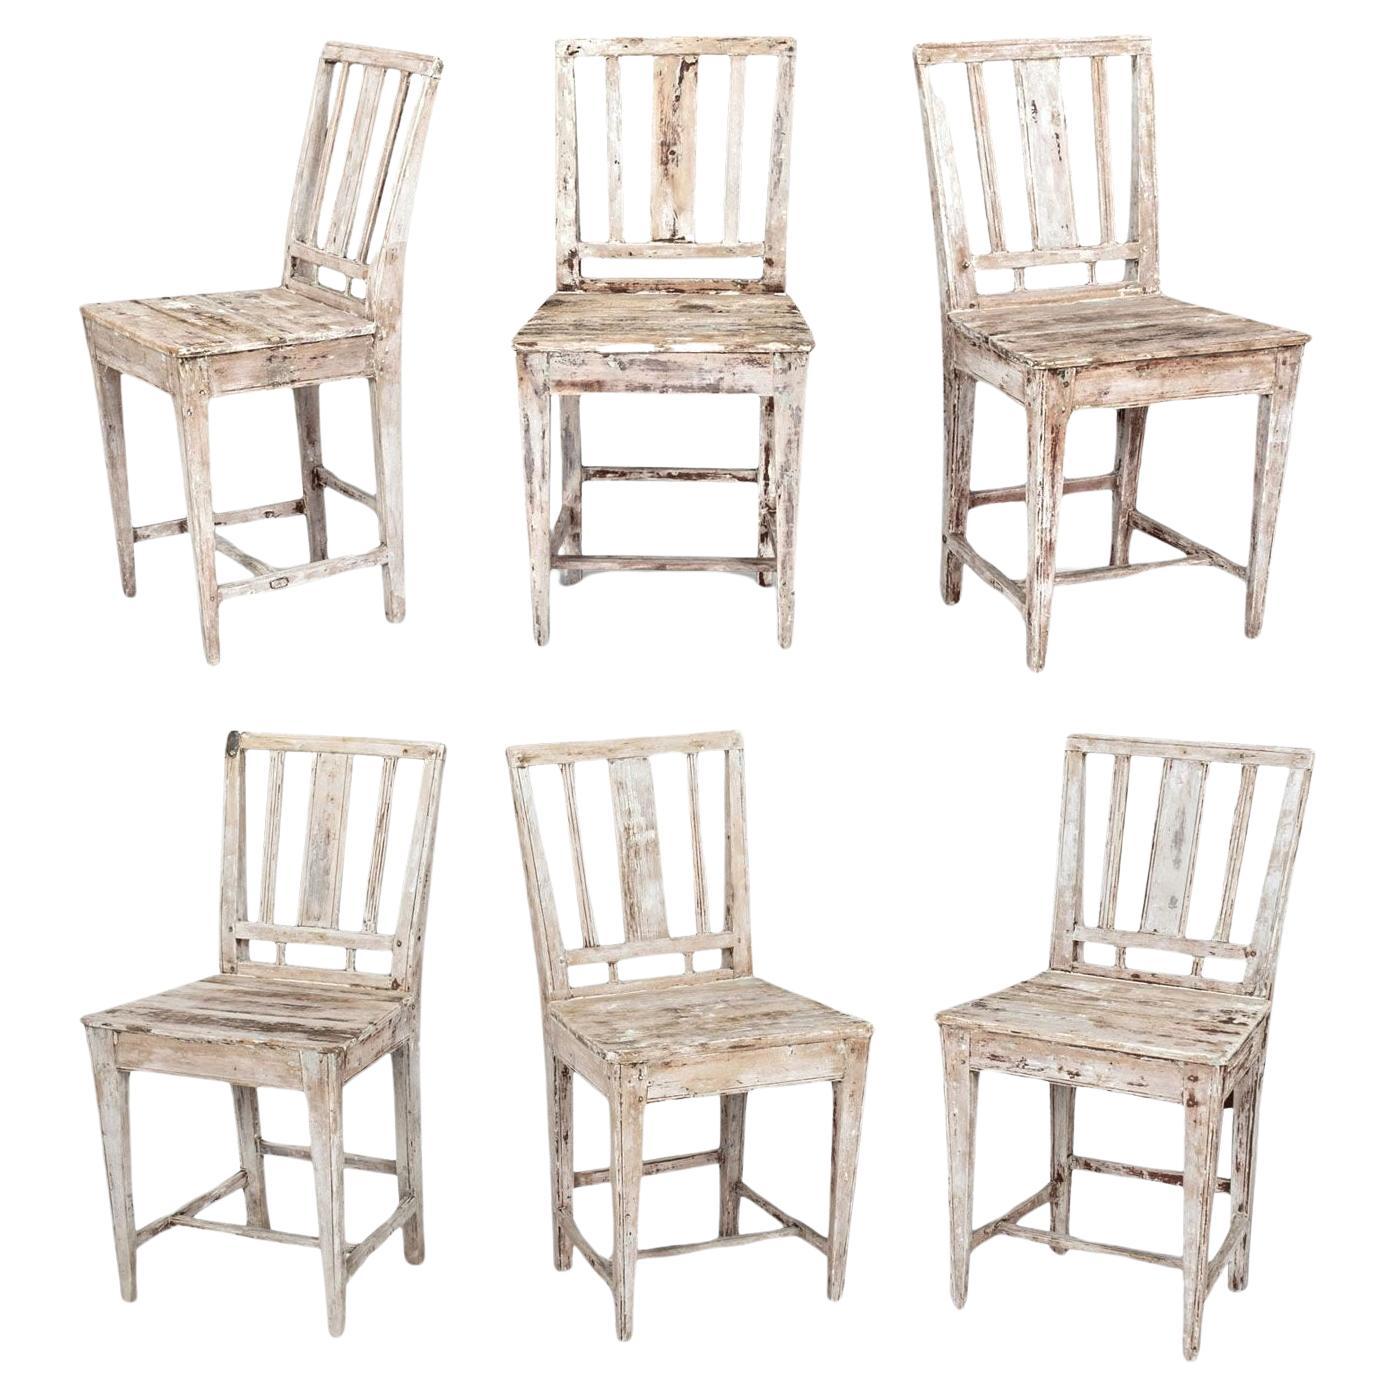 Ensemble de six chaises de ferme suédoises peintes du début du 19e siècle